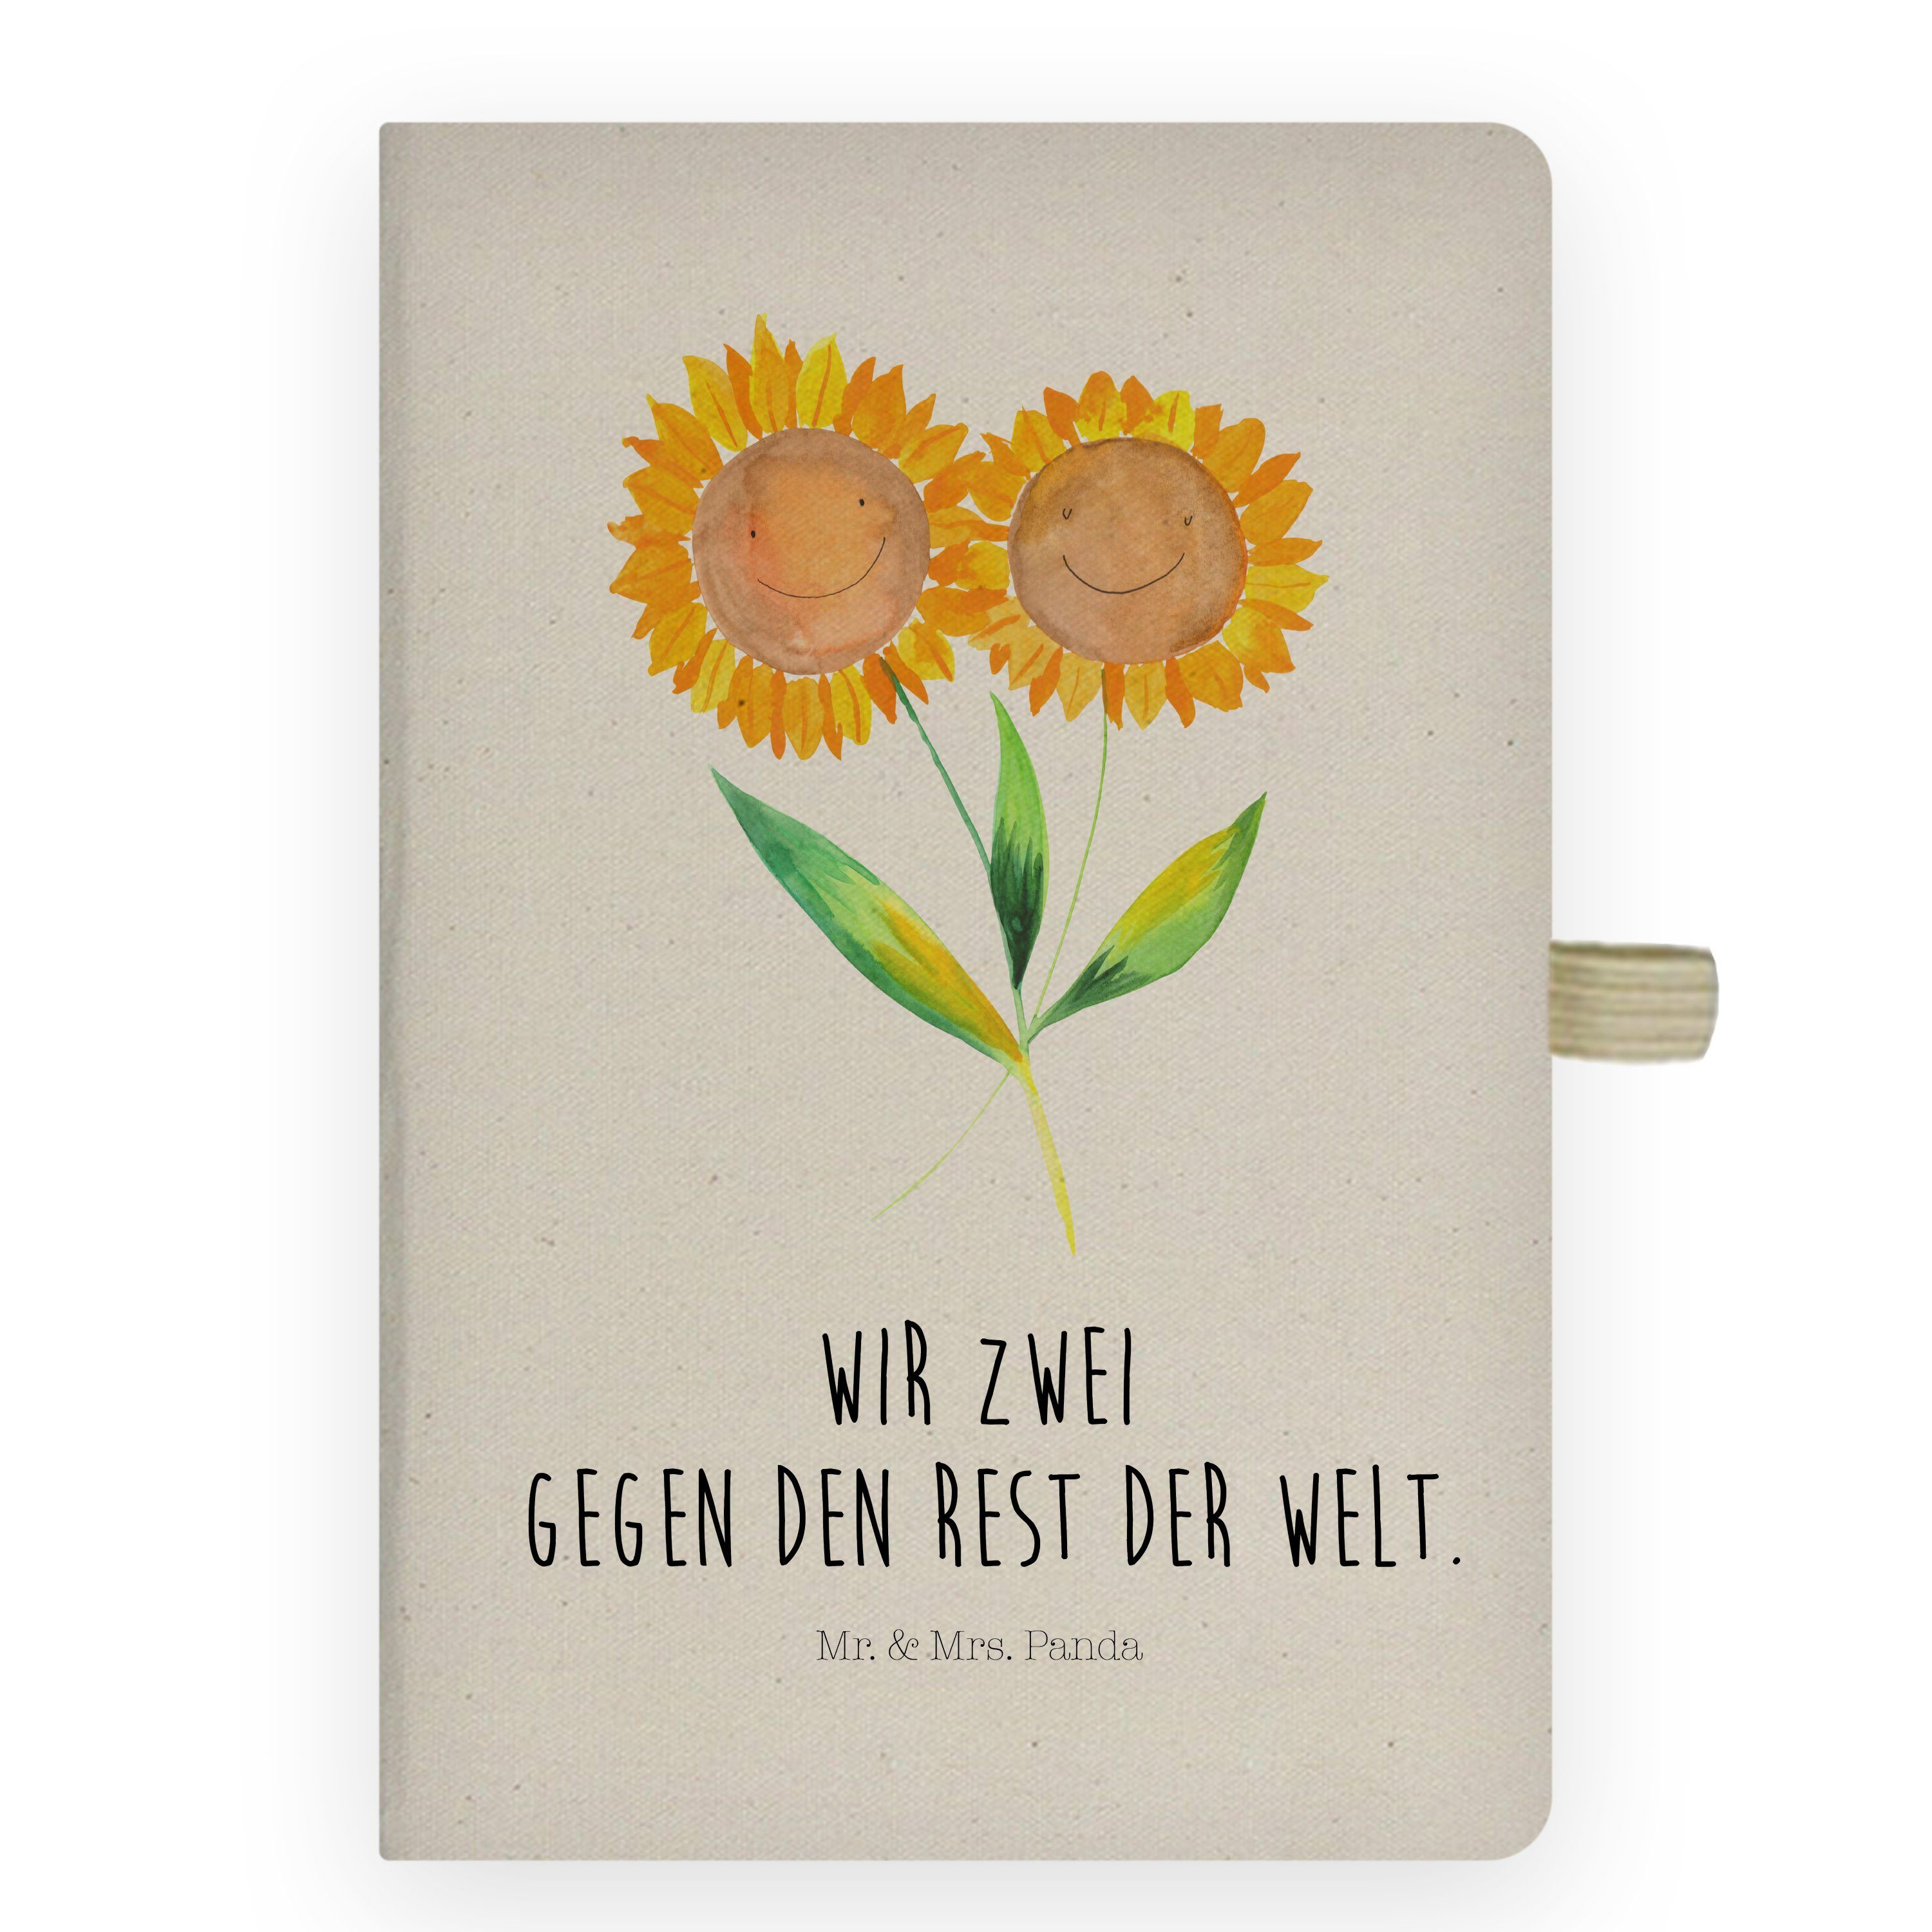 Mr. & Mrs. Panda Notizbuch Sonnenblume - Transparent - Geschenk, Blumen, Pflanzen, Notizen, Eint Mr. & Mrs. Panda